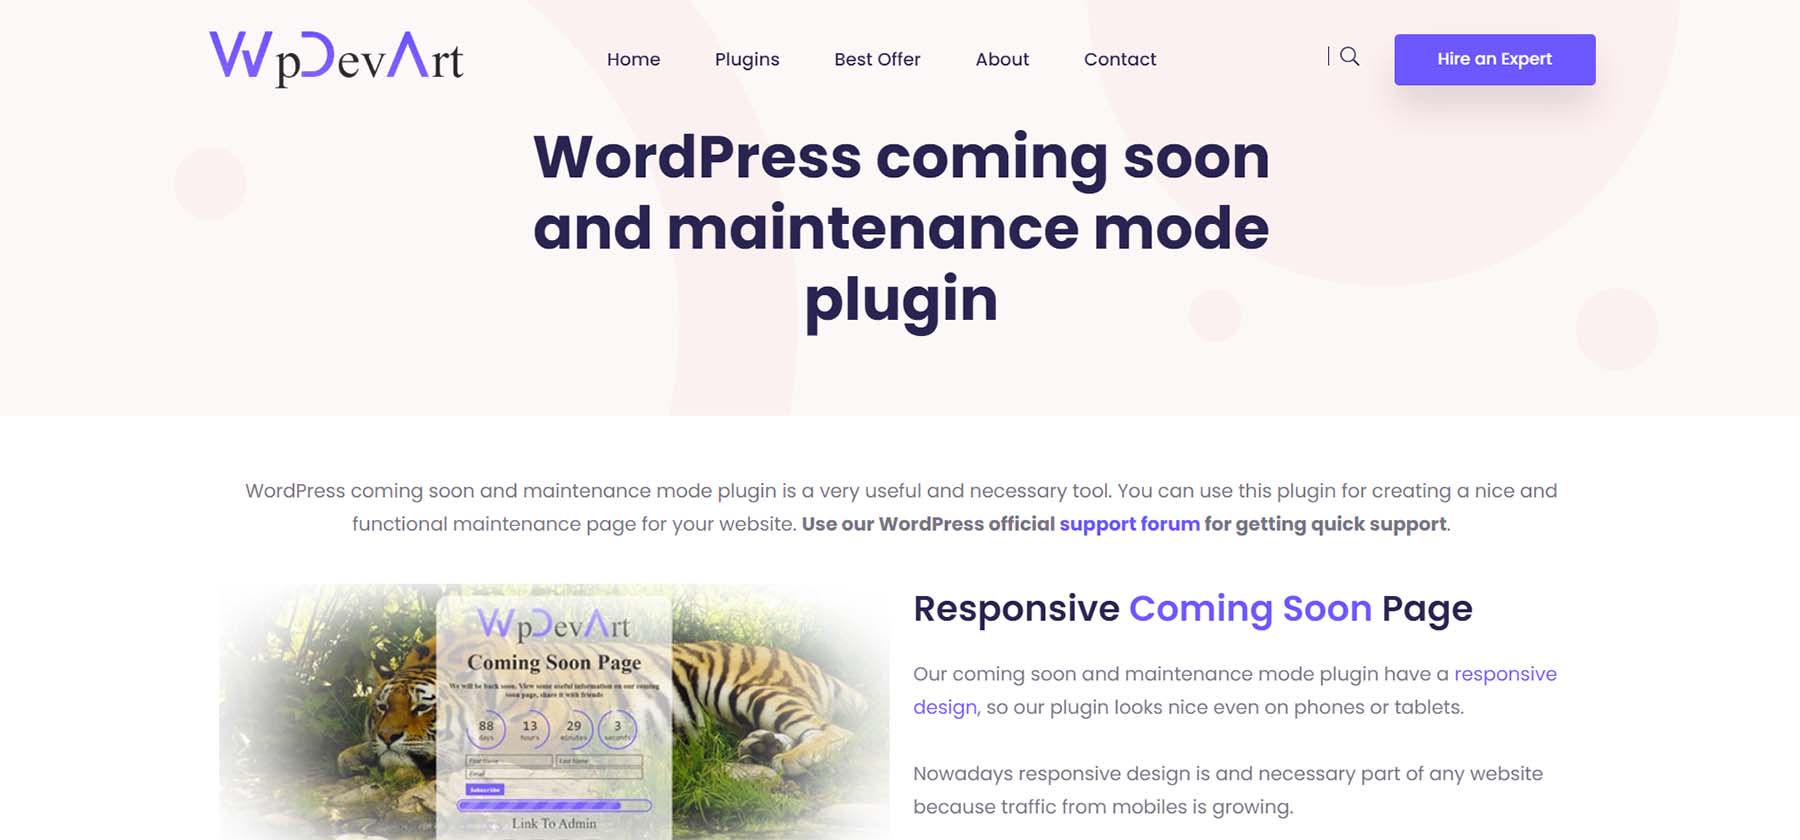 WP Dev Art WordPress kommt bald und Wartungsmodus-Plugin